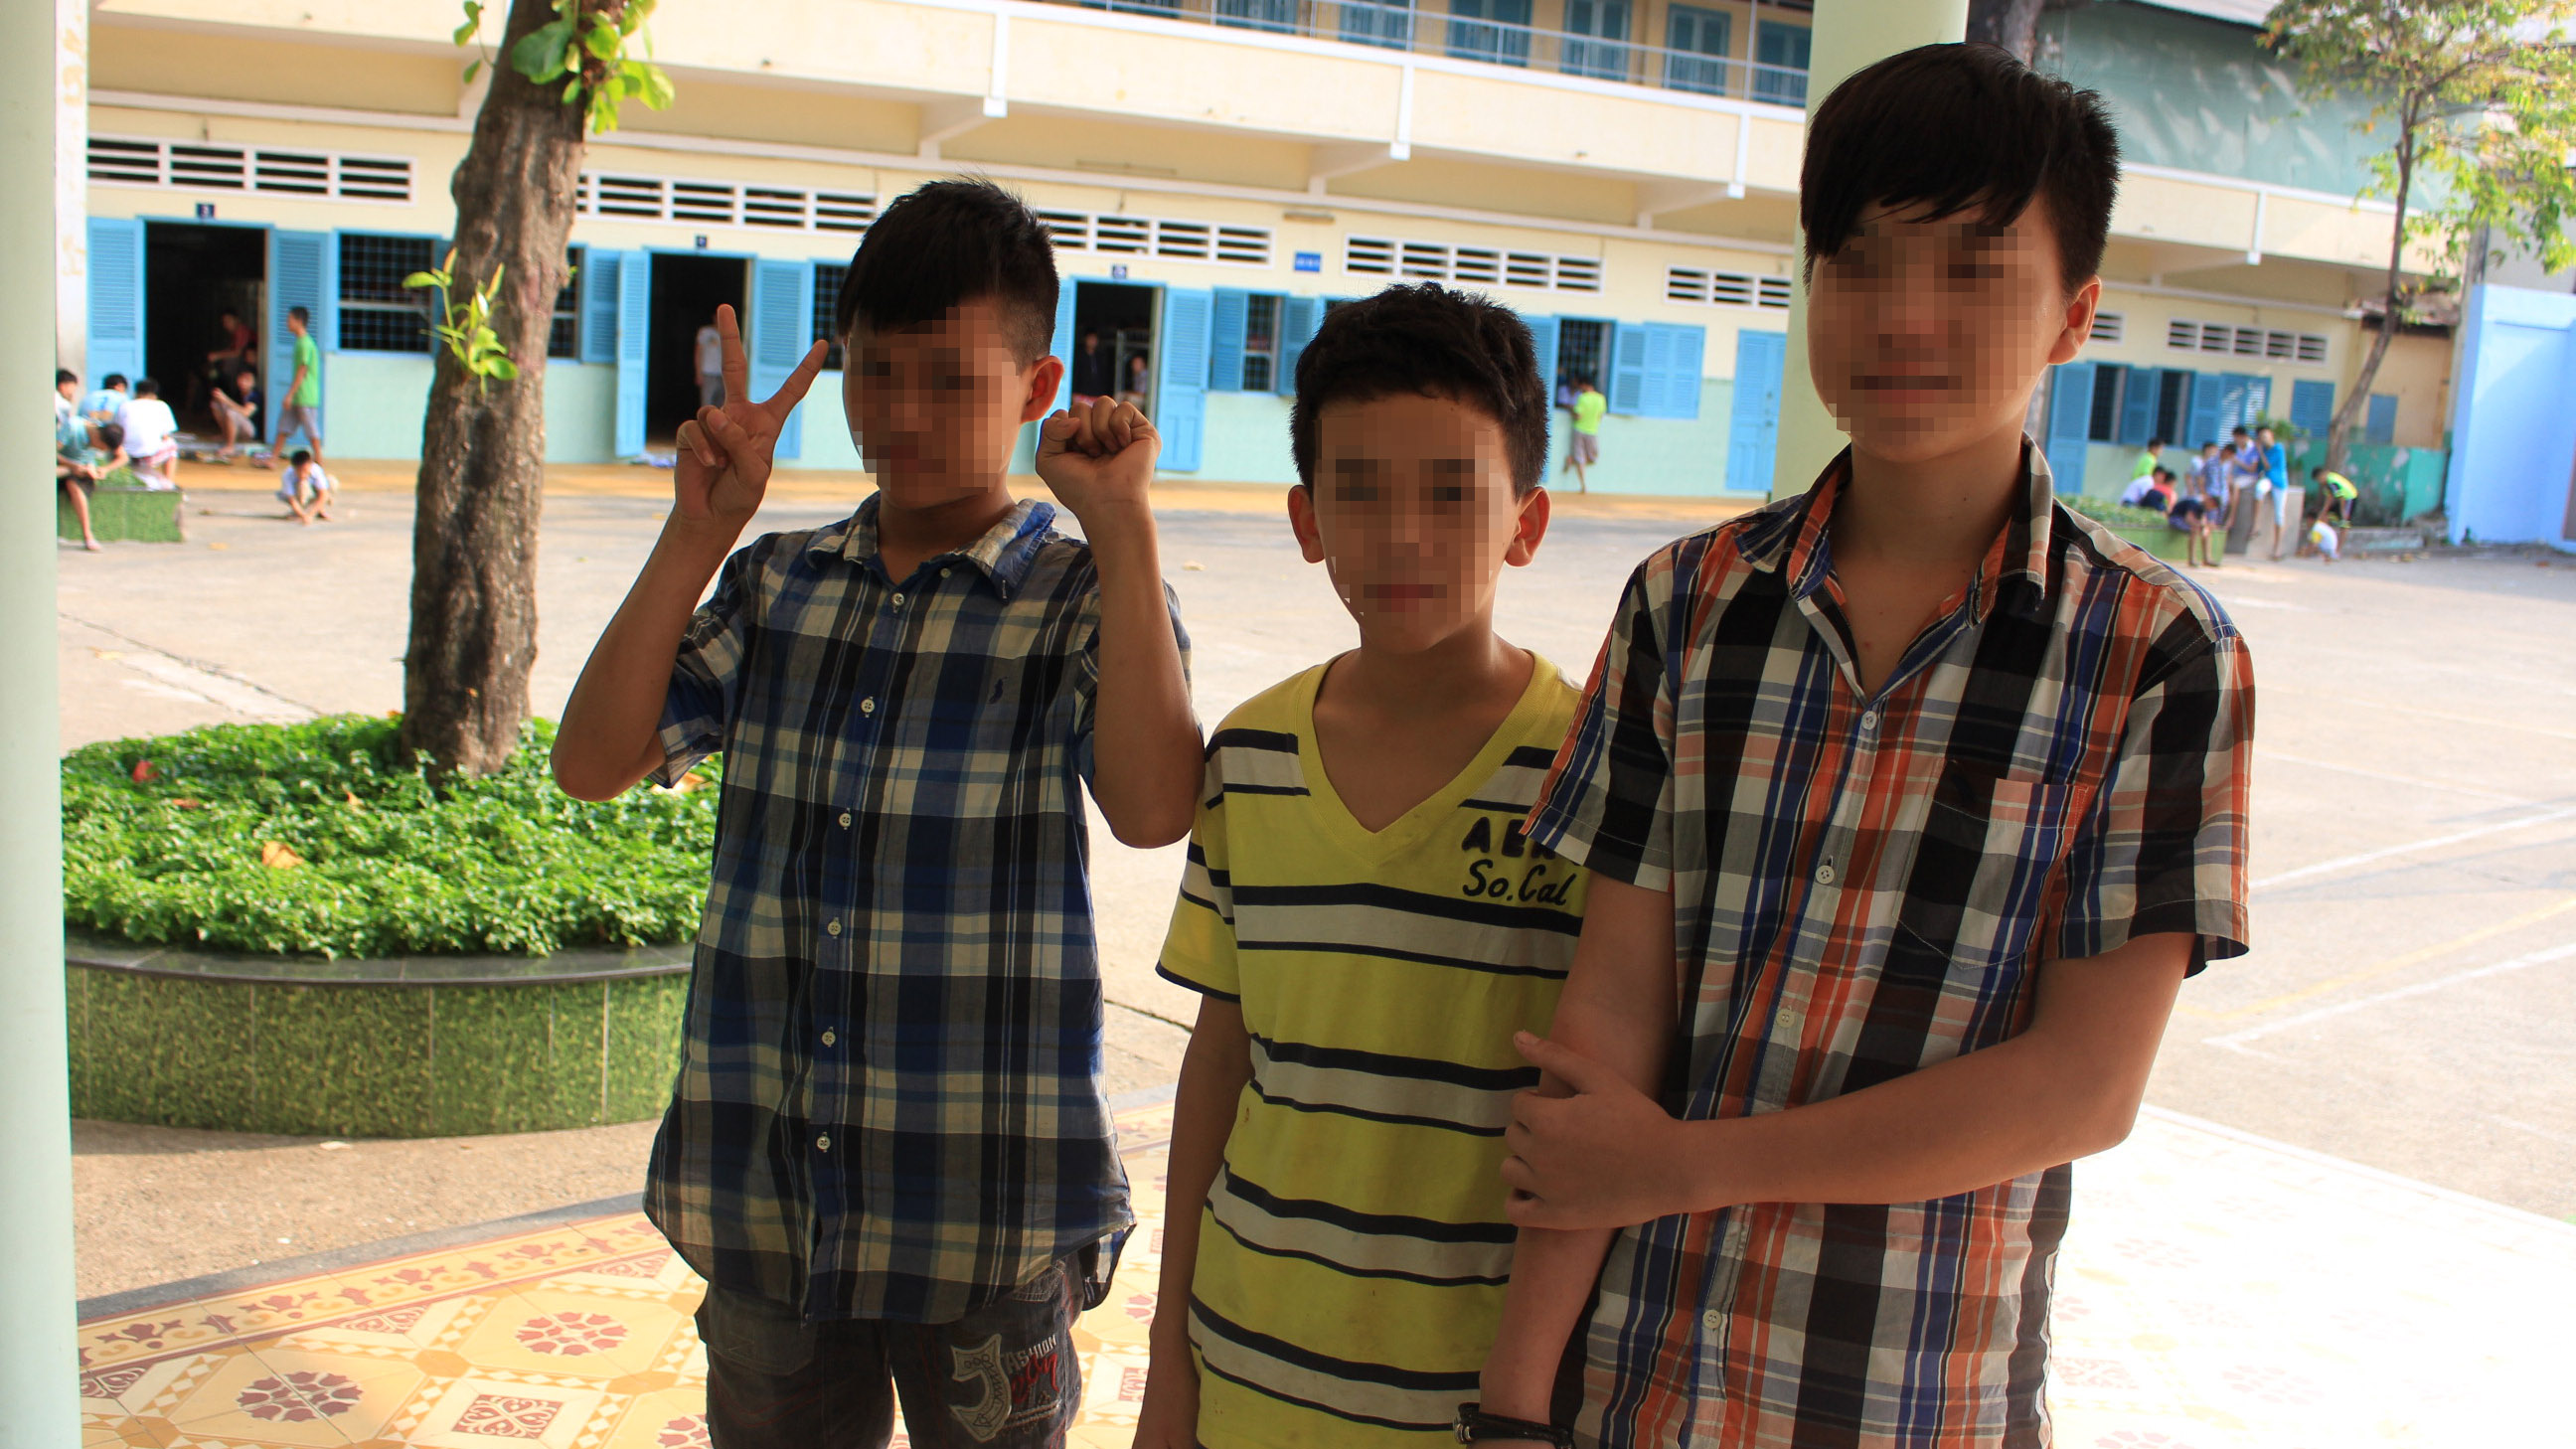 Ba "lao động nhí" từng làm tại Quán phở Lý Quốc Sư tại Trung tâm giáo dục dạy nghề thiếu niên - Ảnh: Vũ Phượng